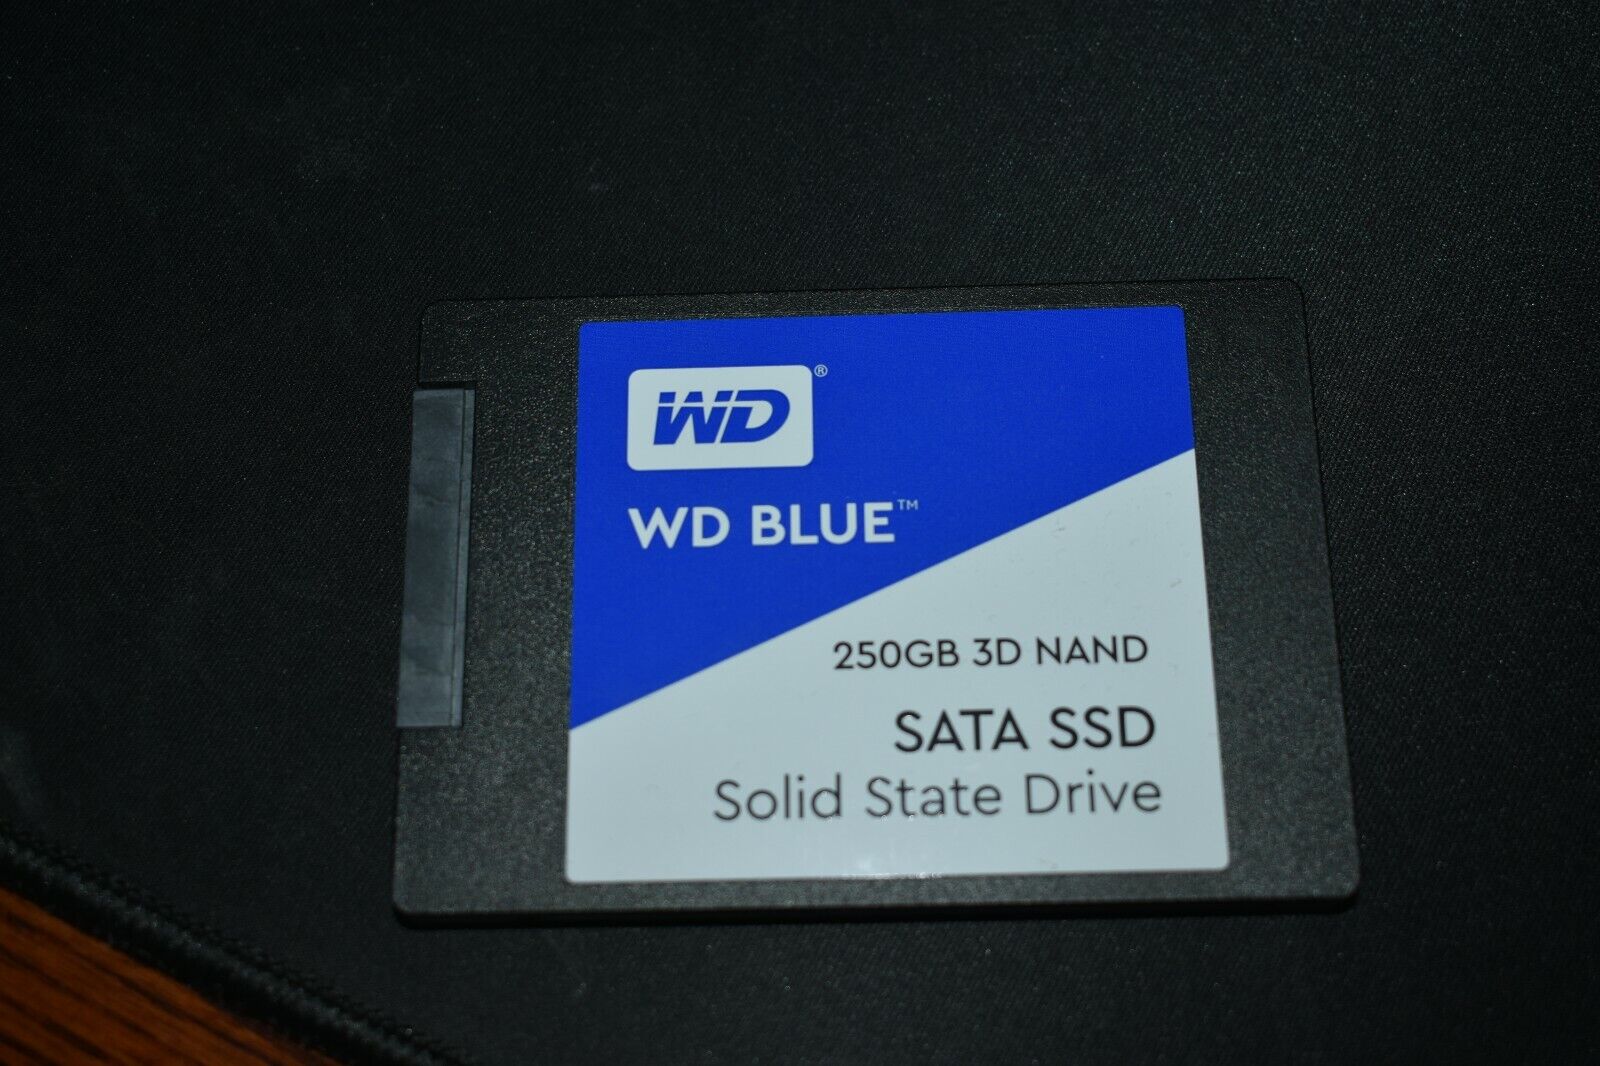 Western Digital WD BLUE 250GB 2.5 Internal SSD - Adult, Single Owner